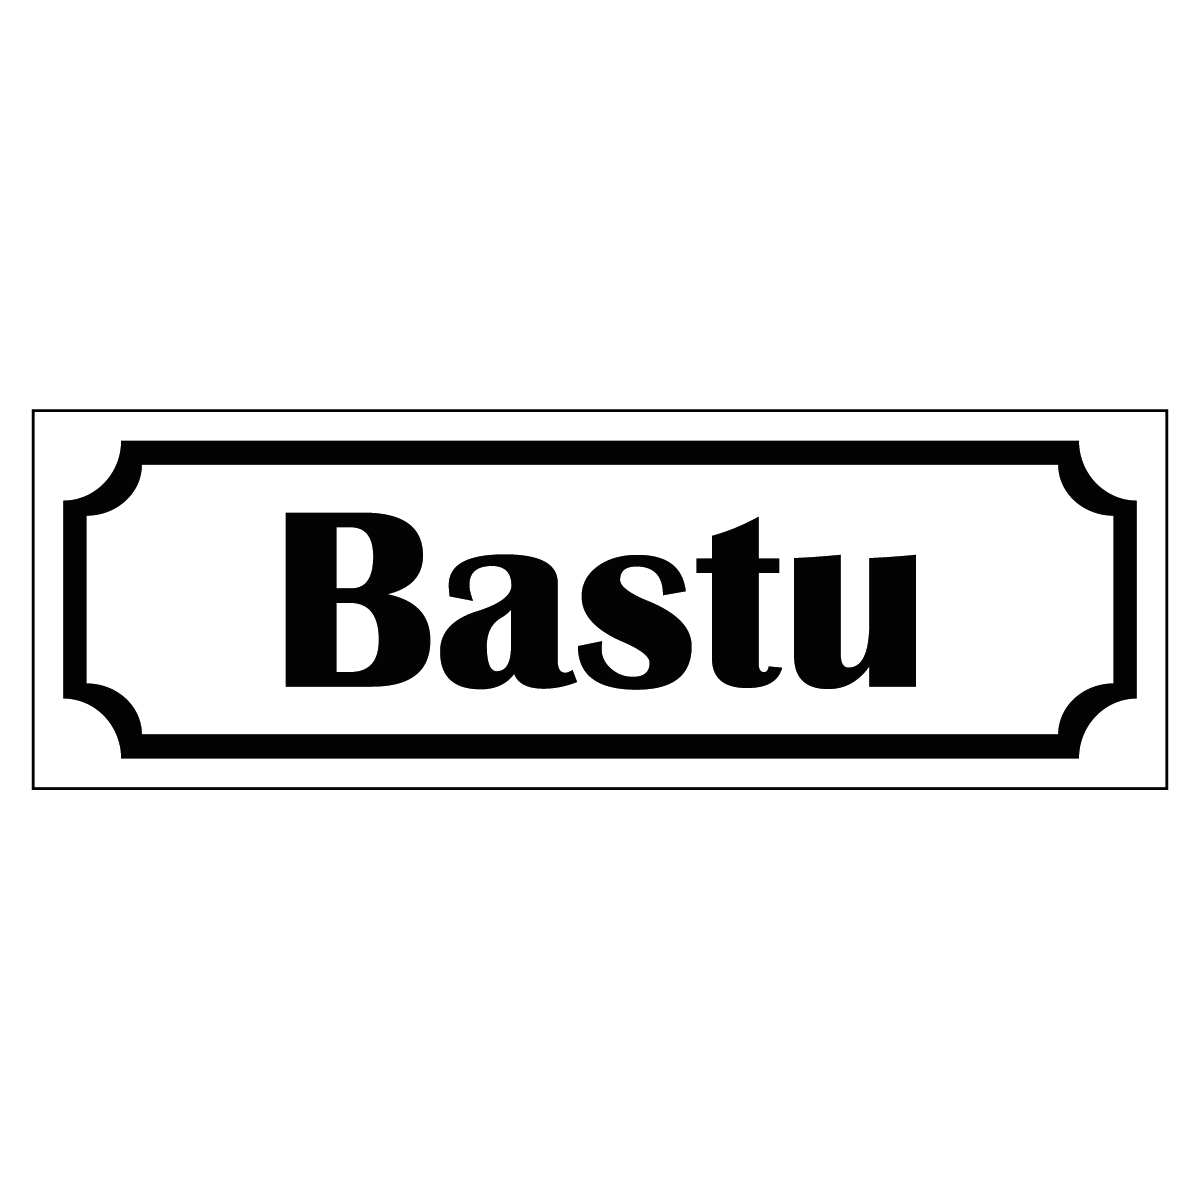 Bastu - Skylt - 150x50mm - Vit - Svart